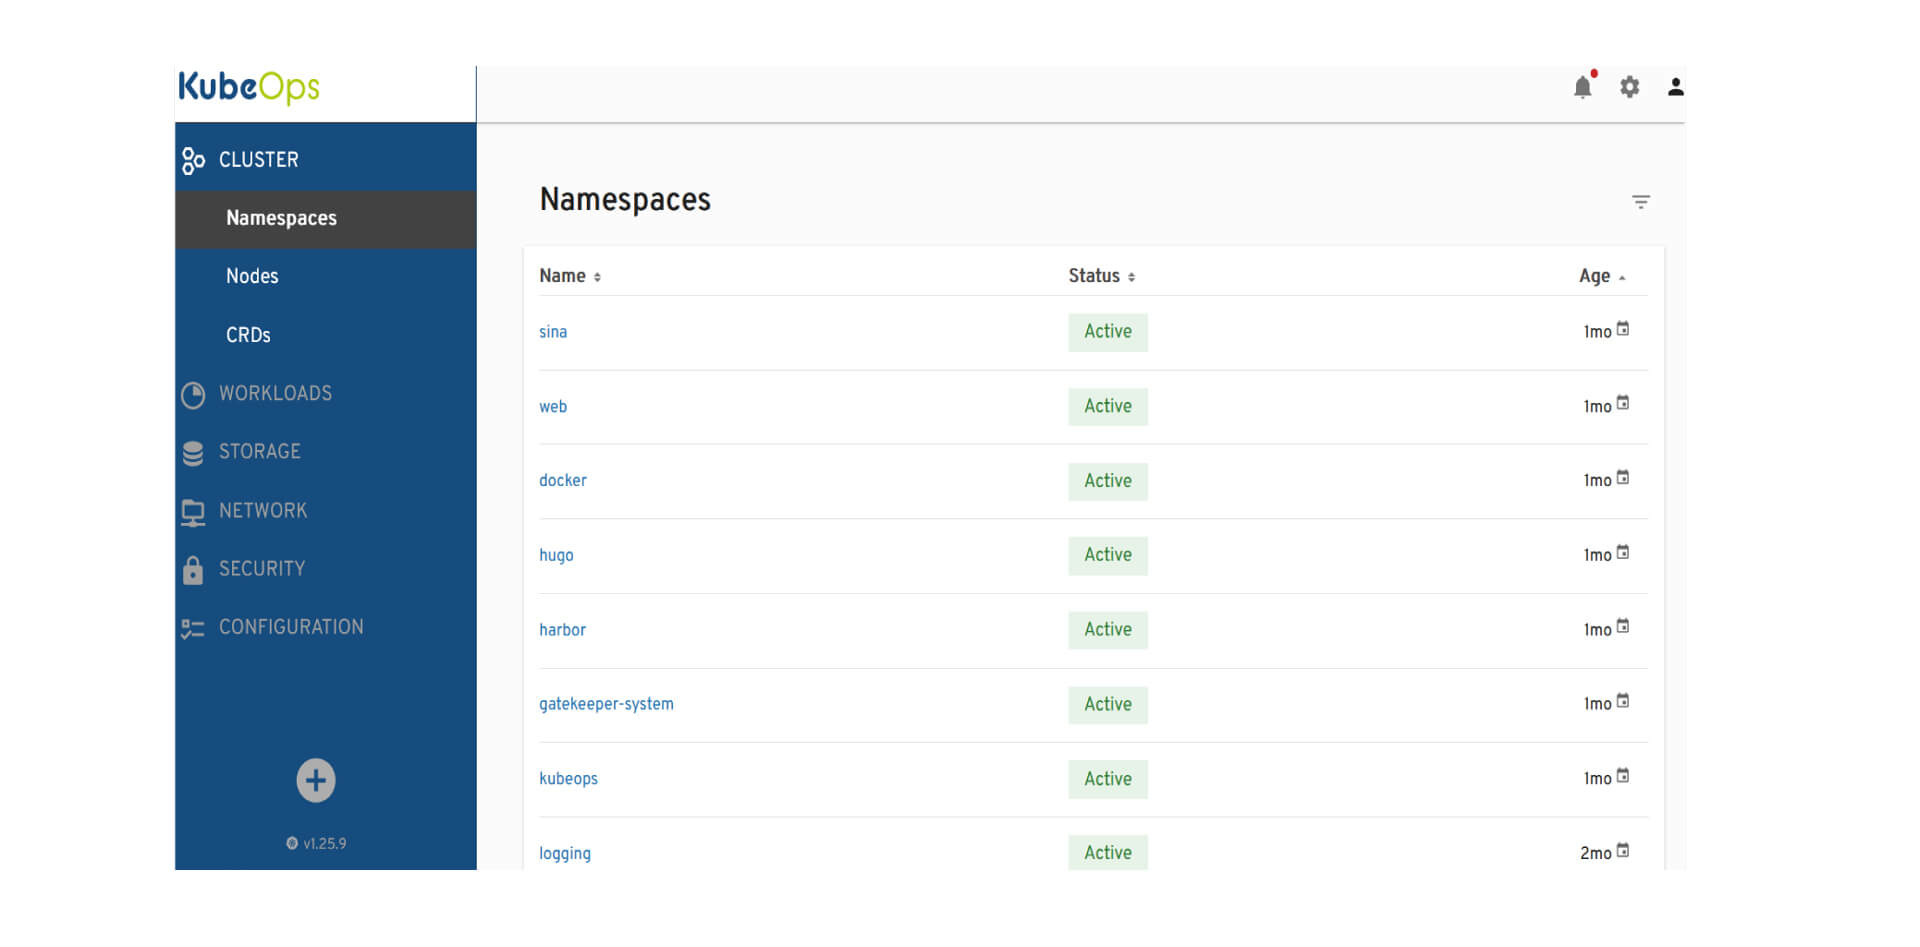 Das Bild zeigt die Benutzeroberfläche des KubeOps-Dashboards, das die Details der Namespaces eines Kubernetes-Clusters anzeigt. Auf der linken Seite befindet sich eine Navigationsleiste mit verschiedenen Menüpunkten wie 